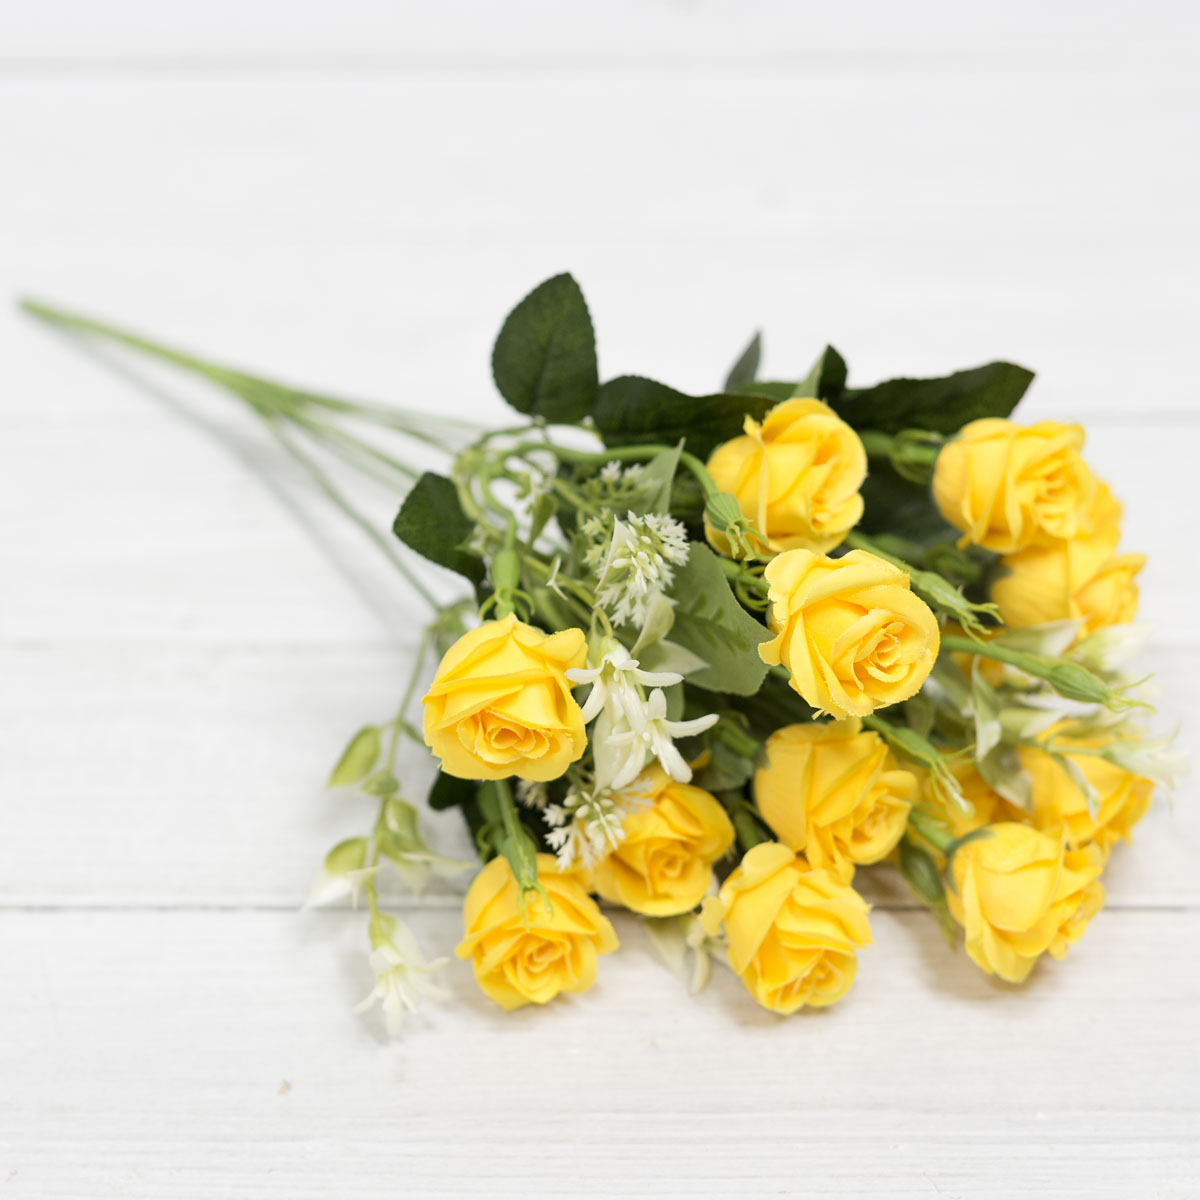 실크플라워 장미조화 잉글리쉬로즈 버드 믹스 조화꽃 부쉬 옐로우 테이블에놓은사진